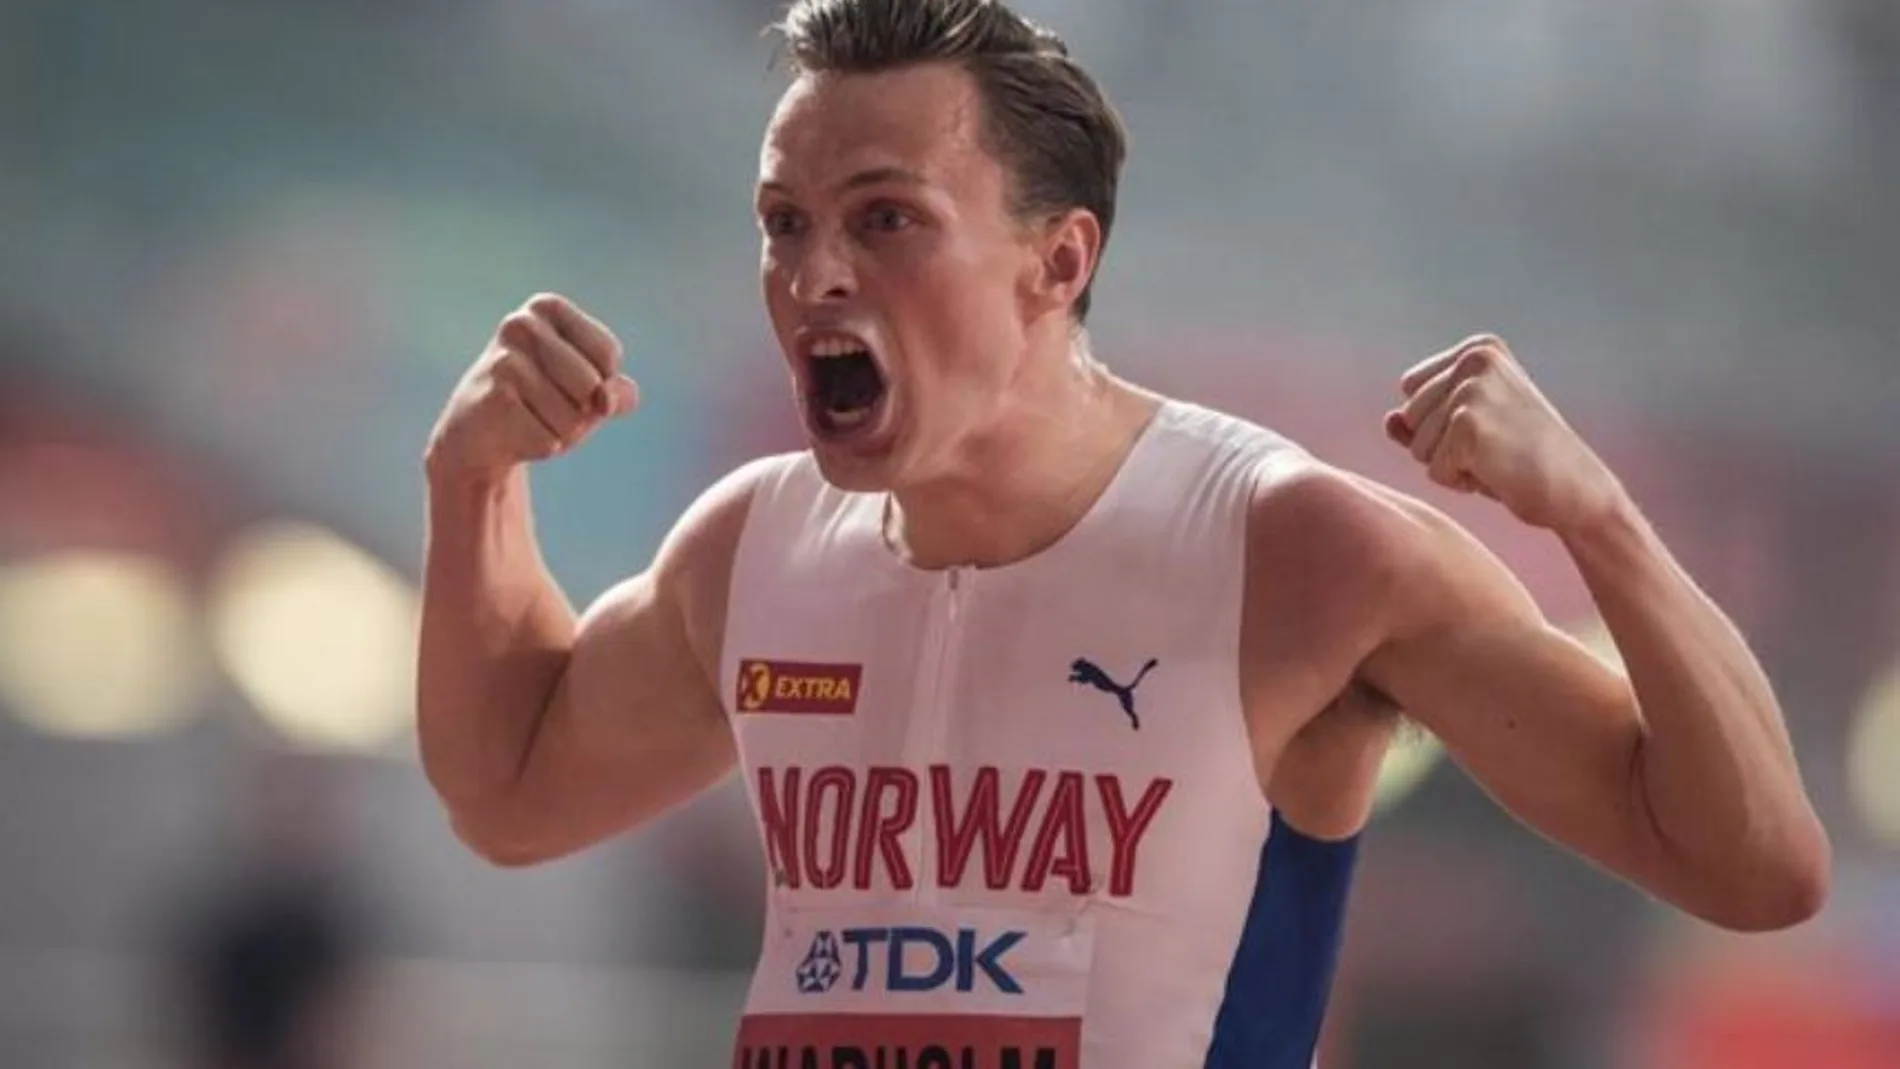 El atleta Karsten Warholm consigue el oro en los Juegos Olímpicos y bate su récord mundial de 400 metros vallas